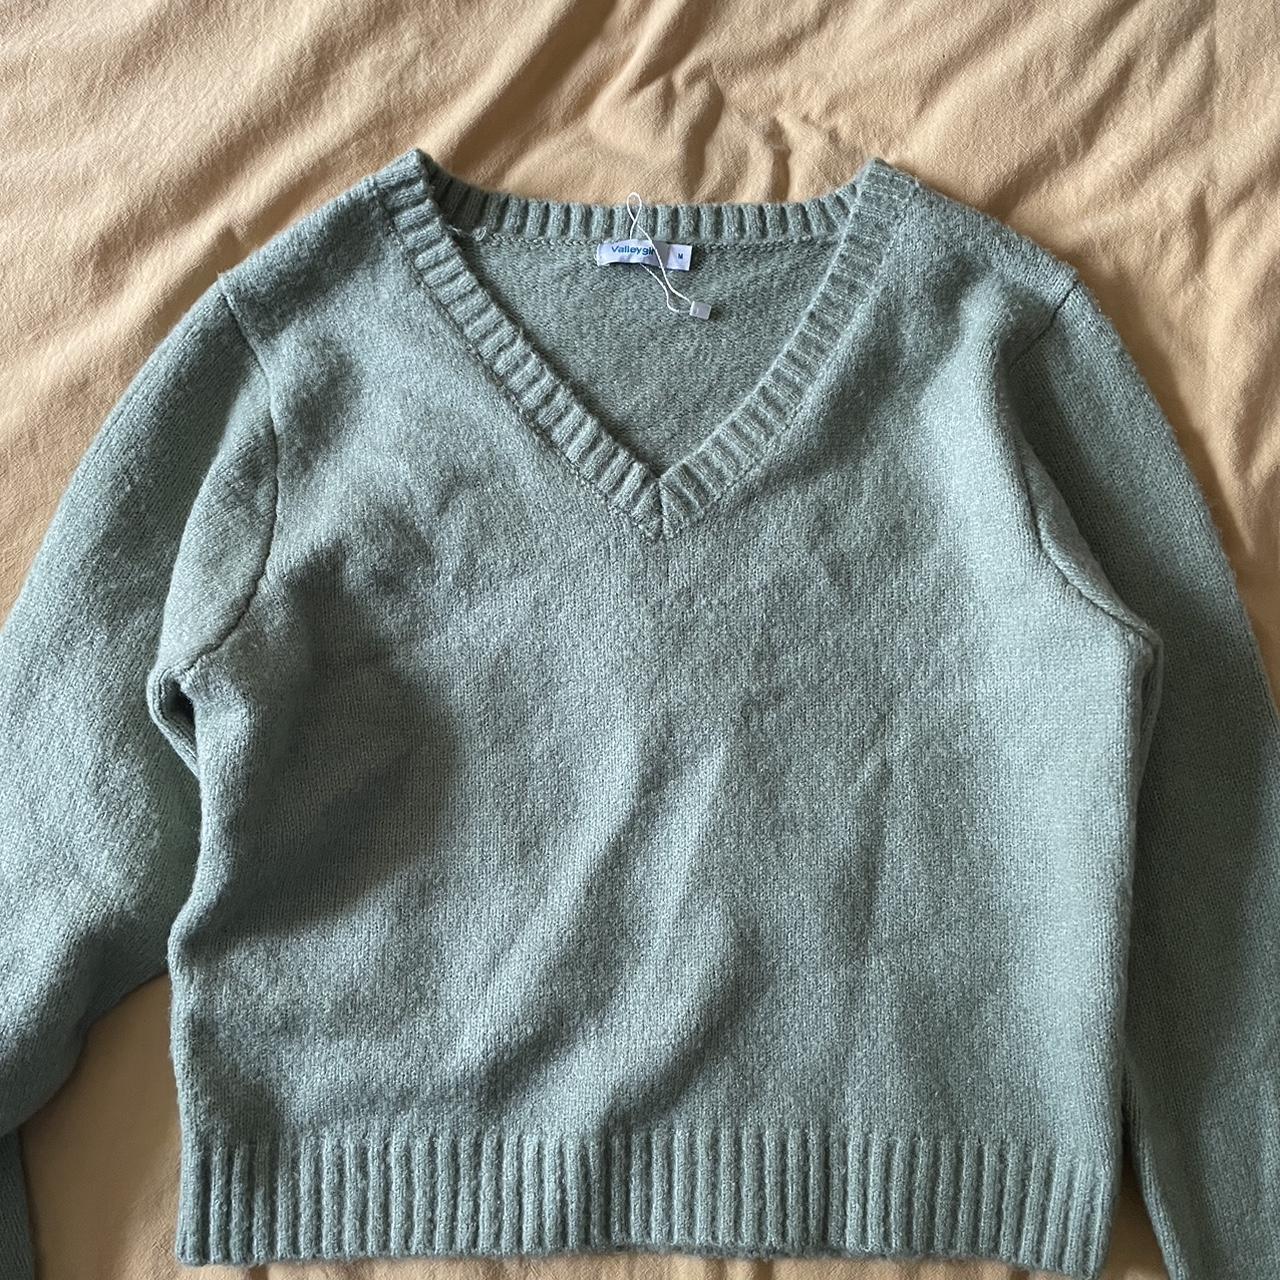 Valleygirl knit - Depop